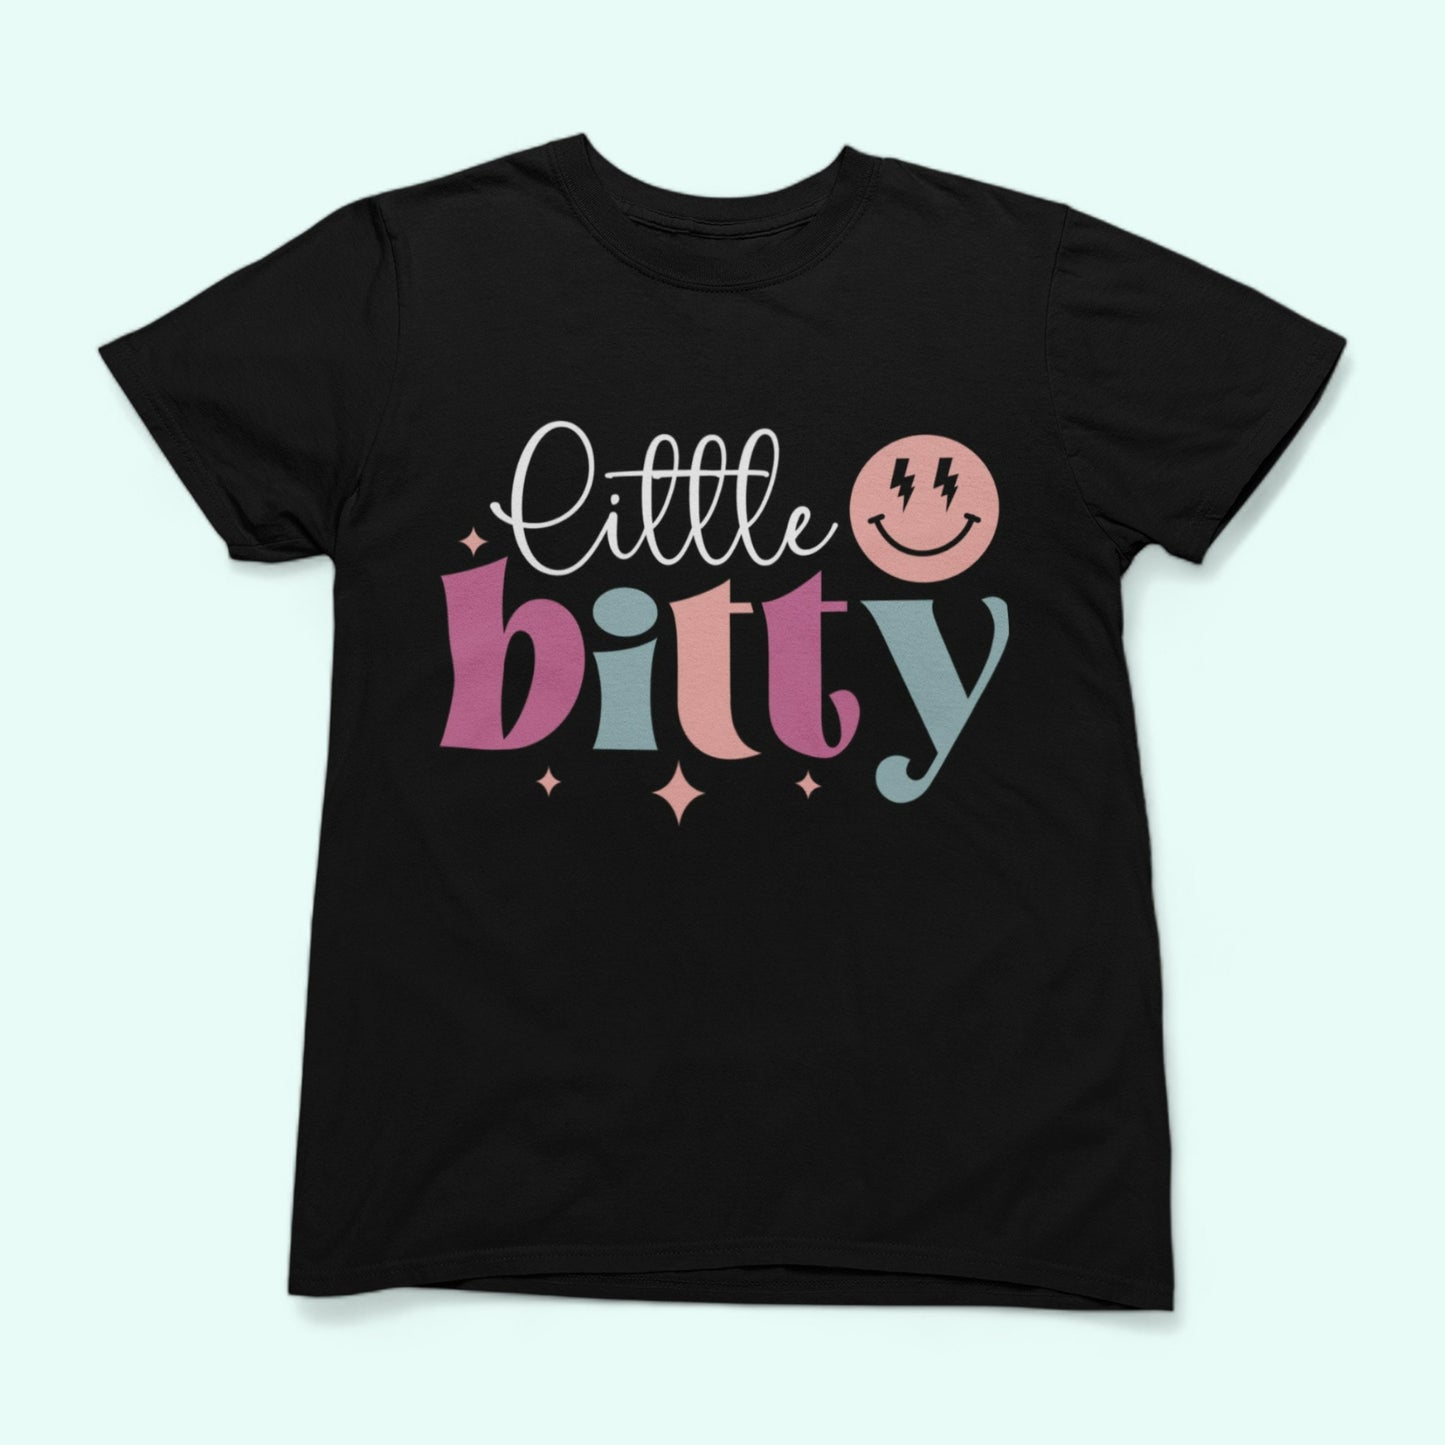 Little Bitty shirt black